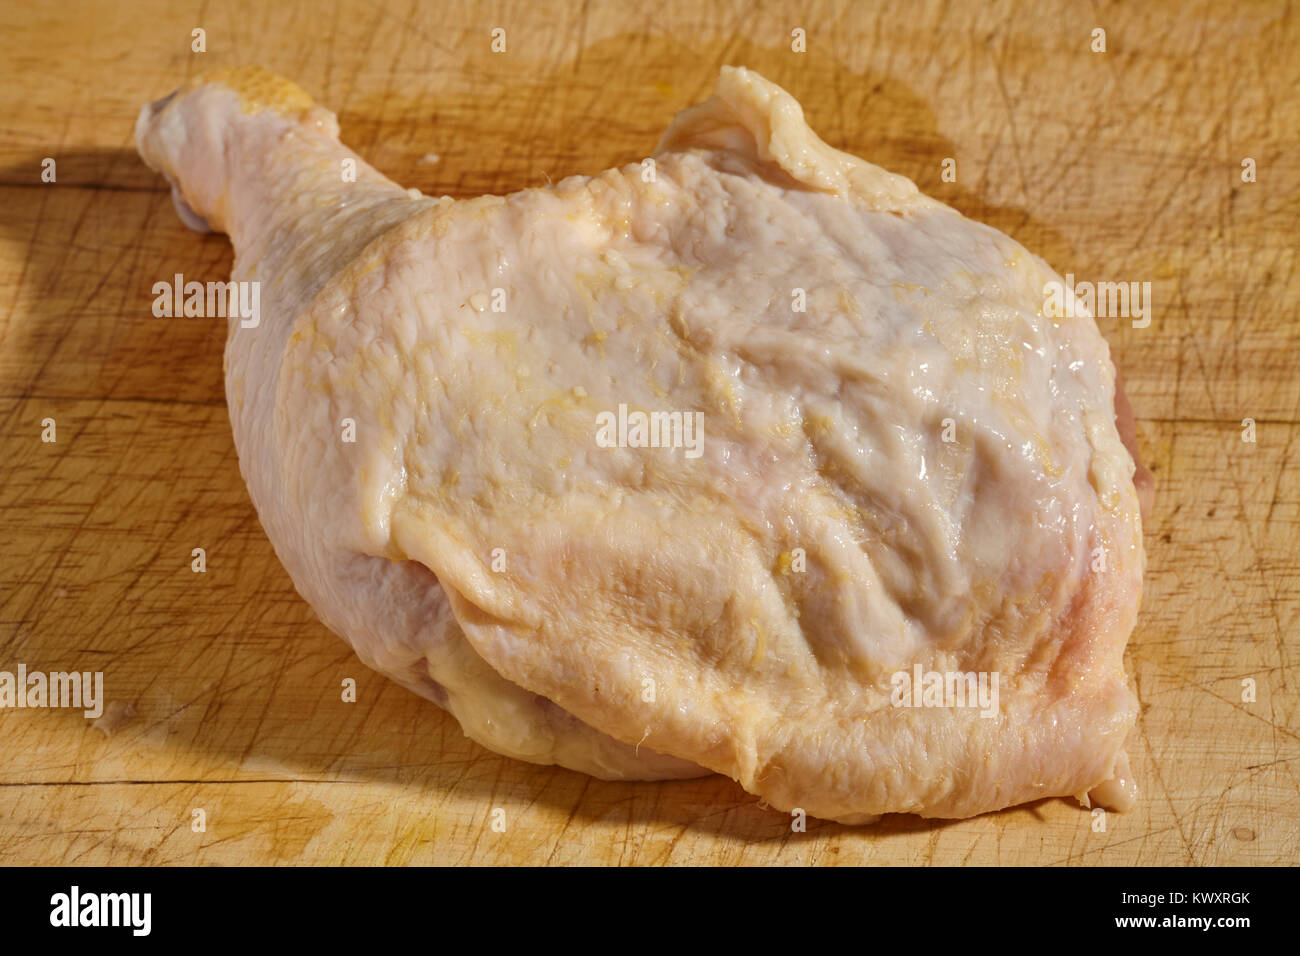 Rohes Huhn Bein und Hüfte auf einem Holz Butcher Block Stockfoto